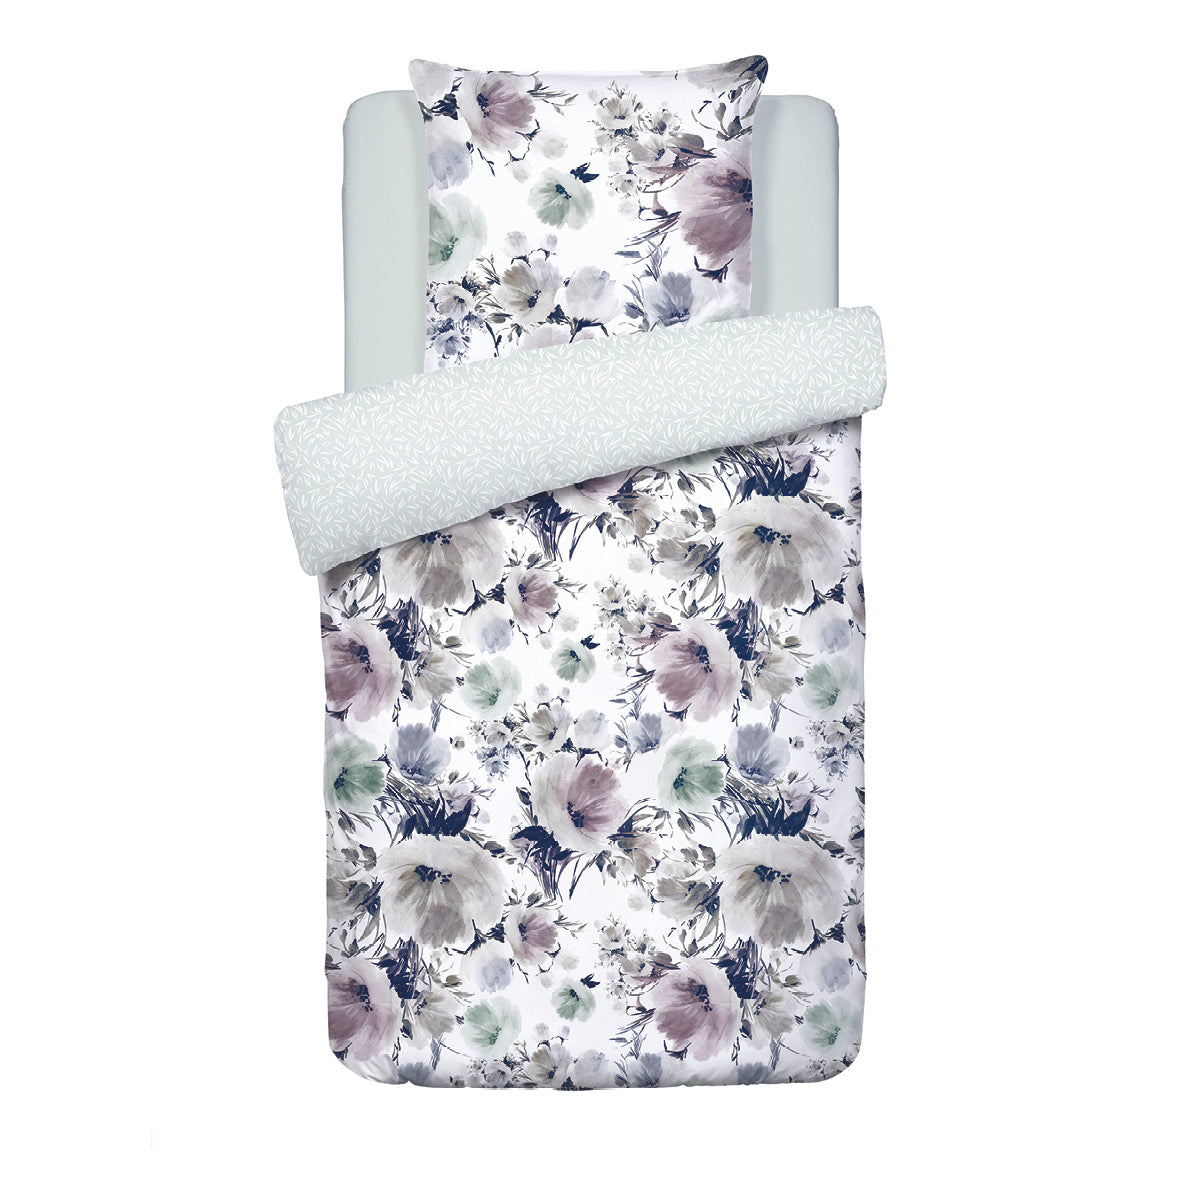 Duvet cover + pillowcase(s) cotton satin - Erodium white